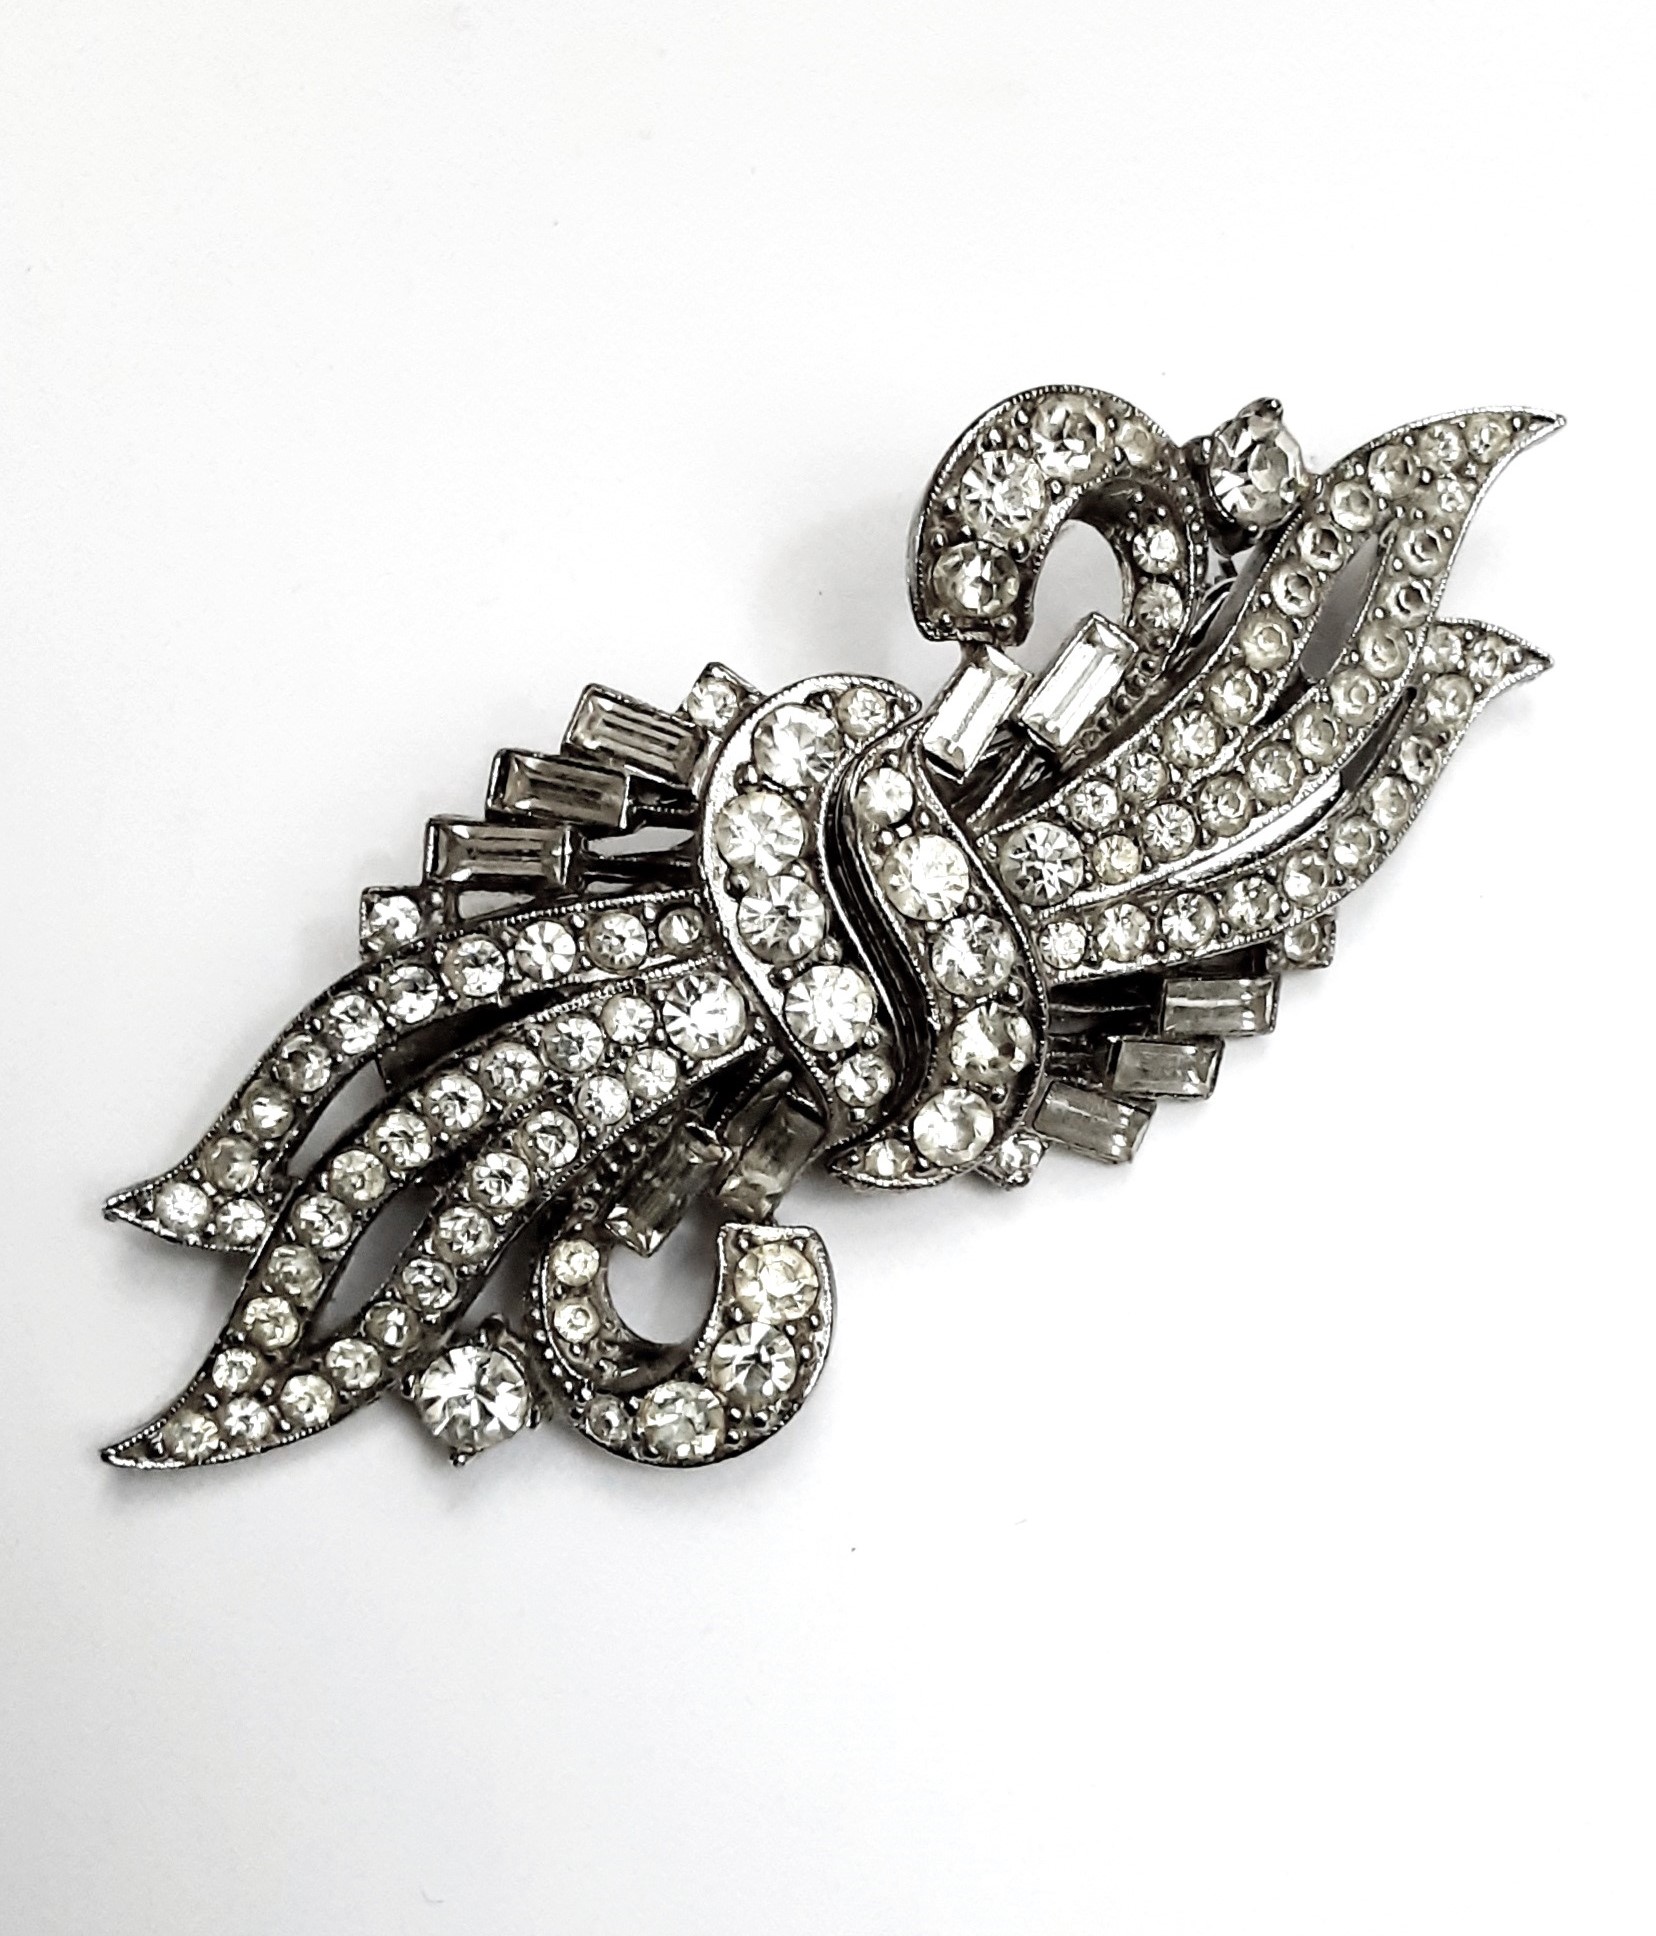 Deco diamante double dress clip brooch